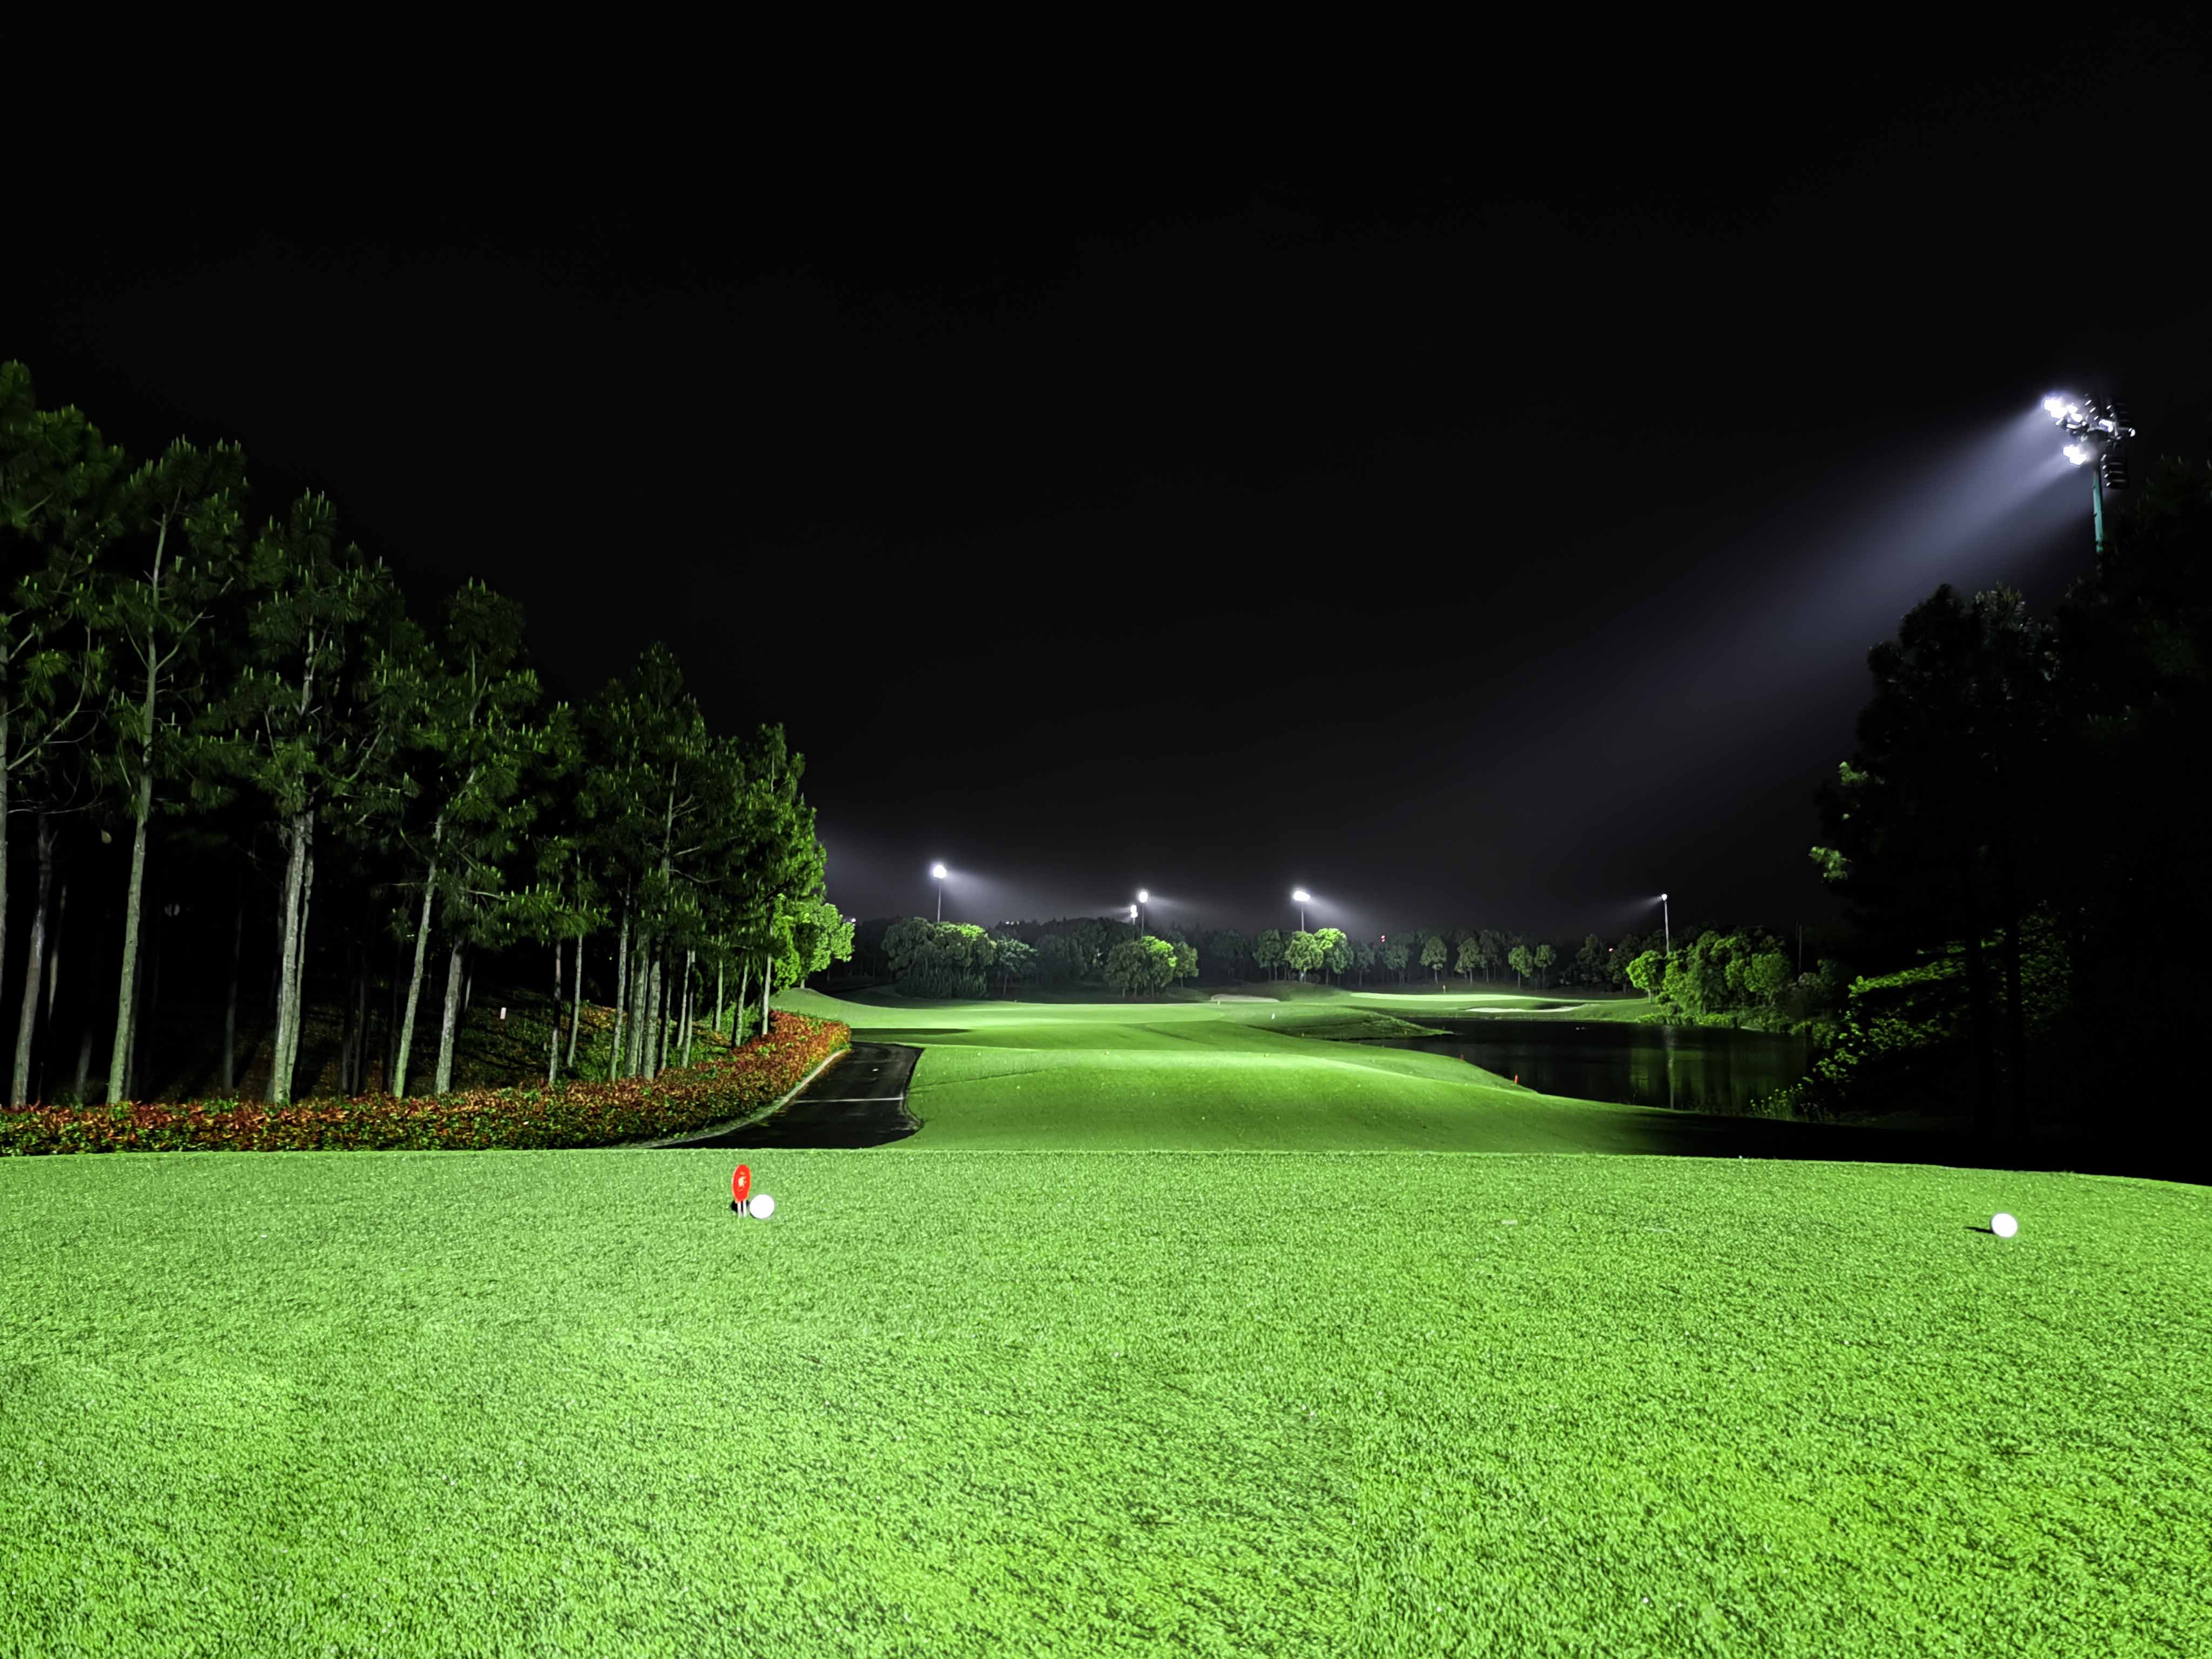 高尔夫球场夜间照明设计与要求-电明科技官网